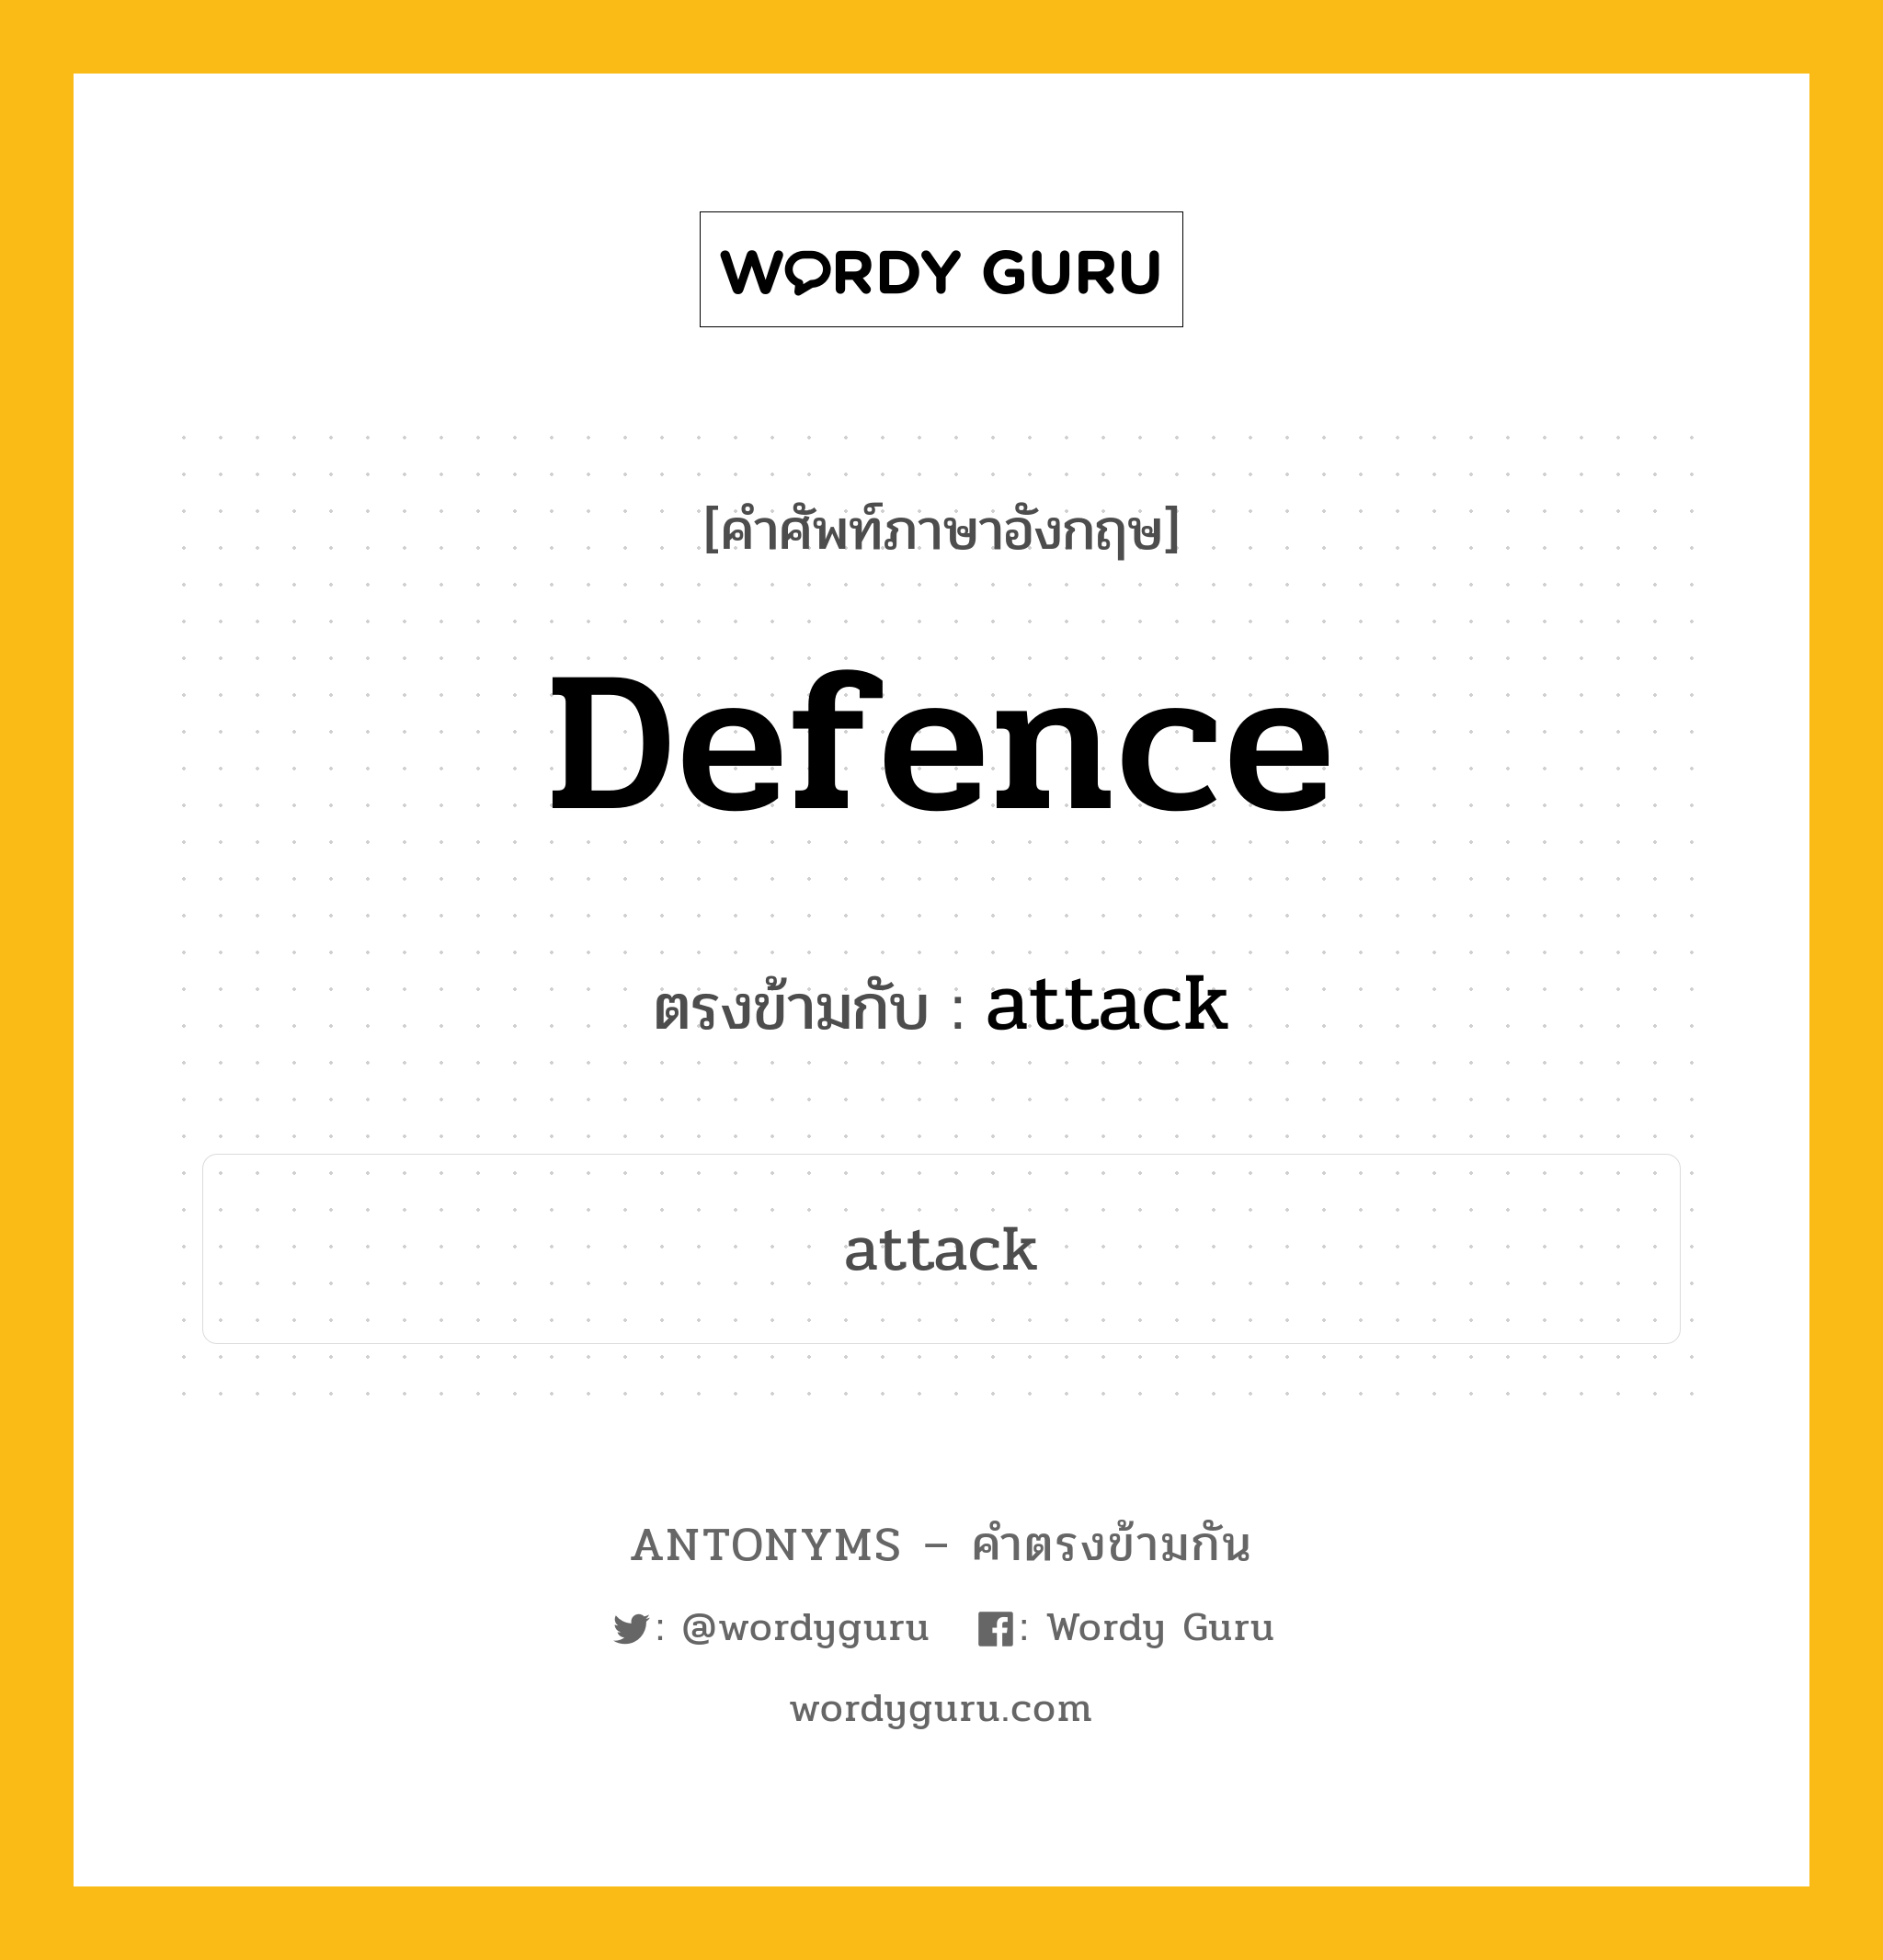 defence เป็นคำตรงข้ามกับคำไหนบ้าง?, คำศัพท์ภาษาอังกฤษ defence ตรงข้ามกับ attack หมวด attack